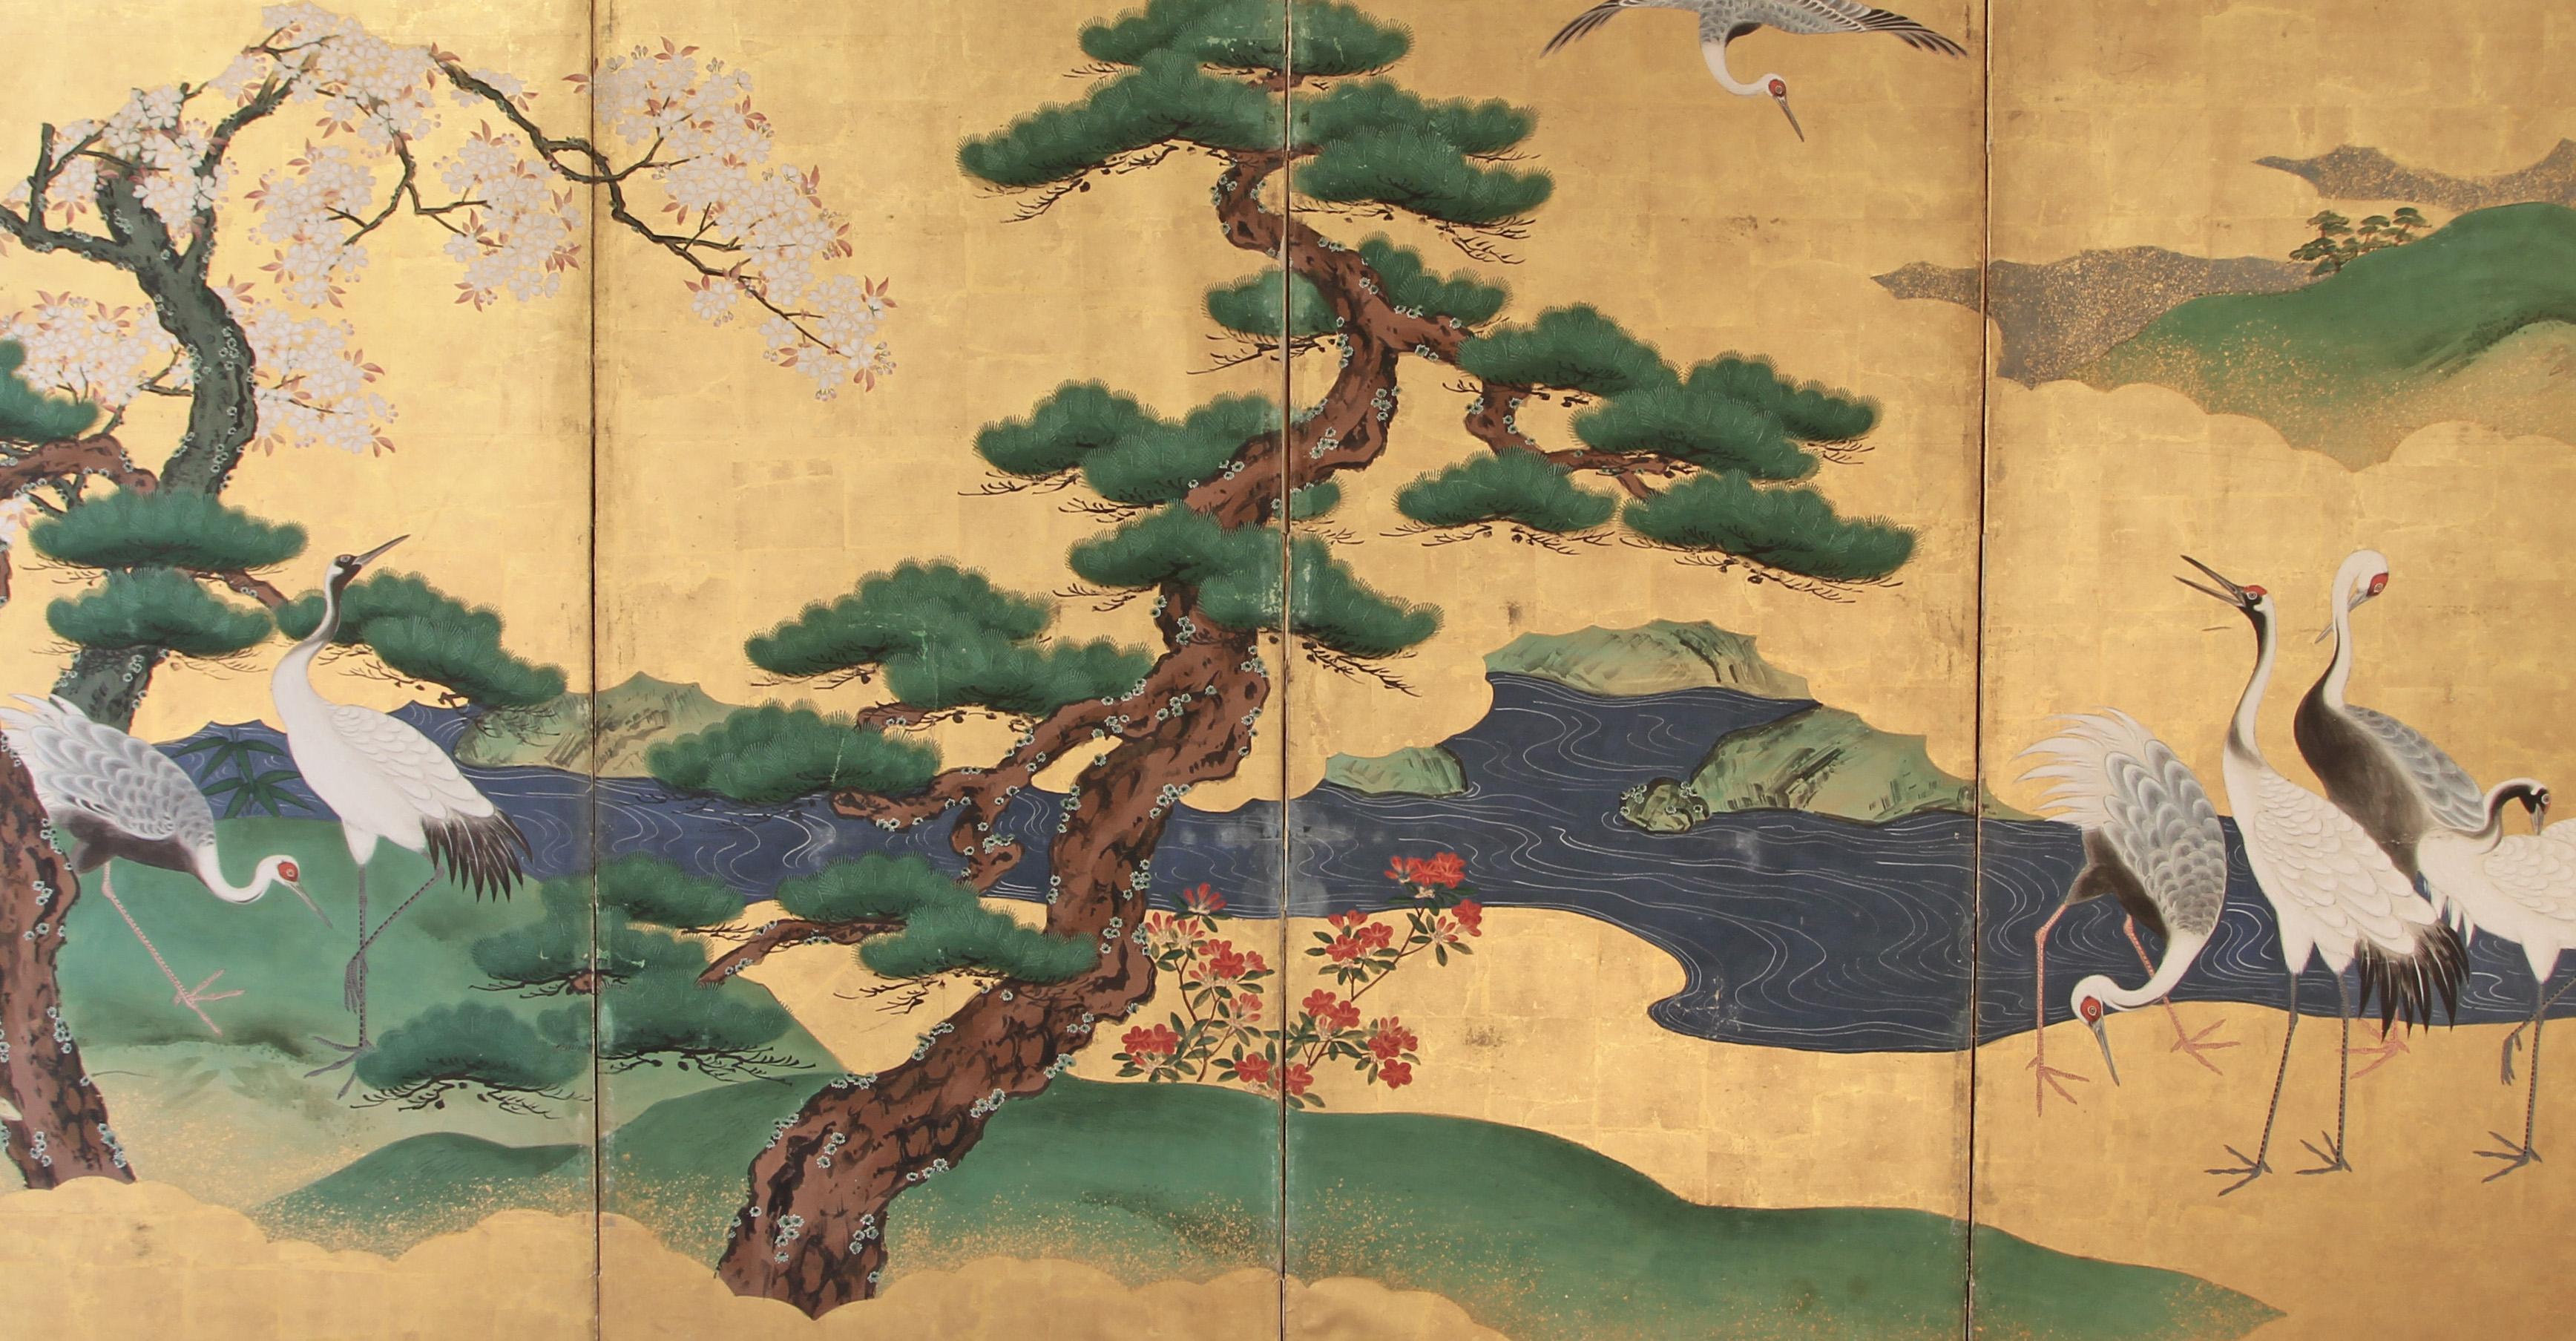 Paravento a sei pannelli di scuola giapponese Kano: paesaggio con bellissime ed eleganti gru vicino al fiume, con alberi di pino e sakura.
Dipinto a mano con pigmenti minerali ed inchiostri su carta vegetale e foglia d' oro.
Buono lo stato di